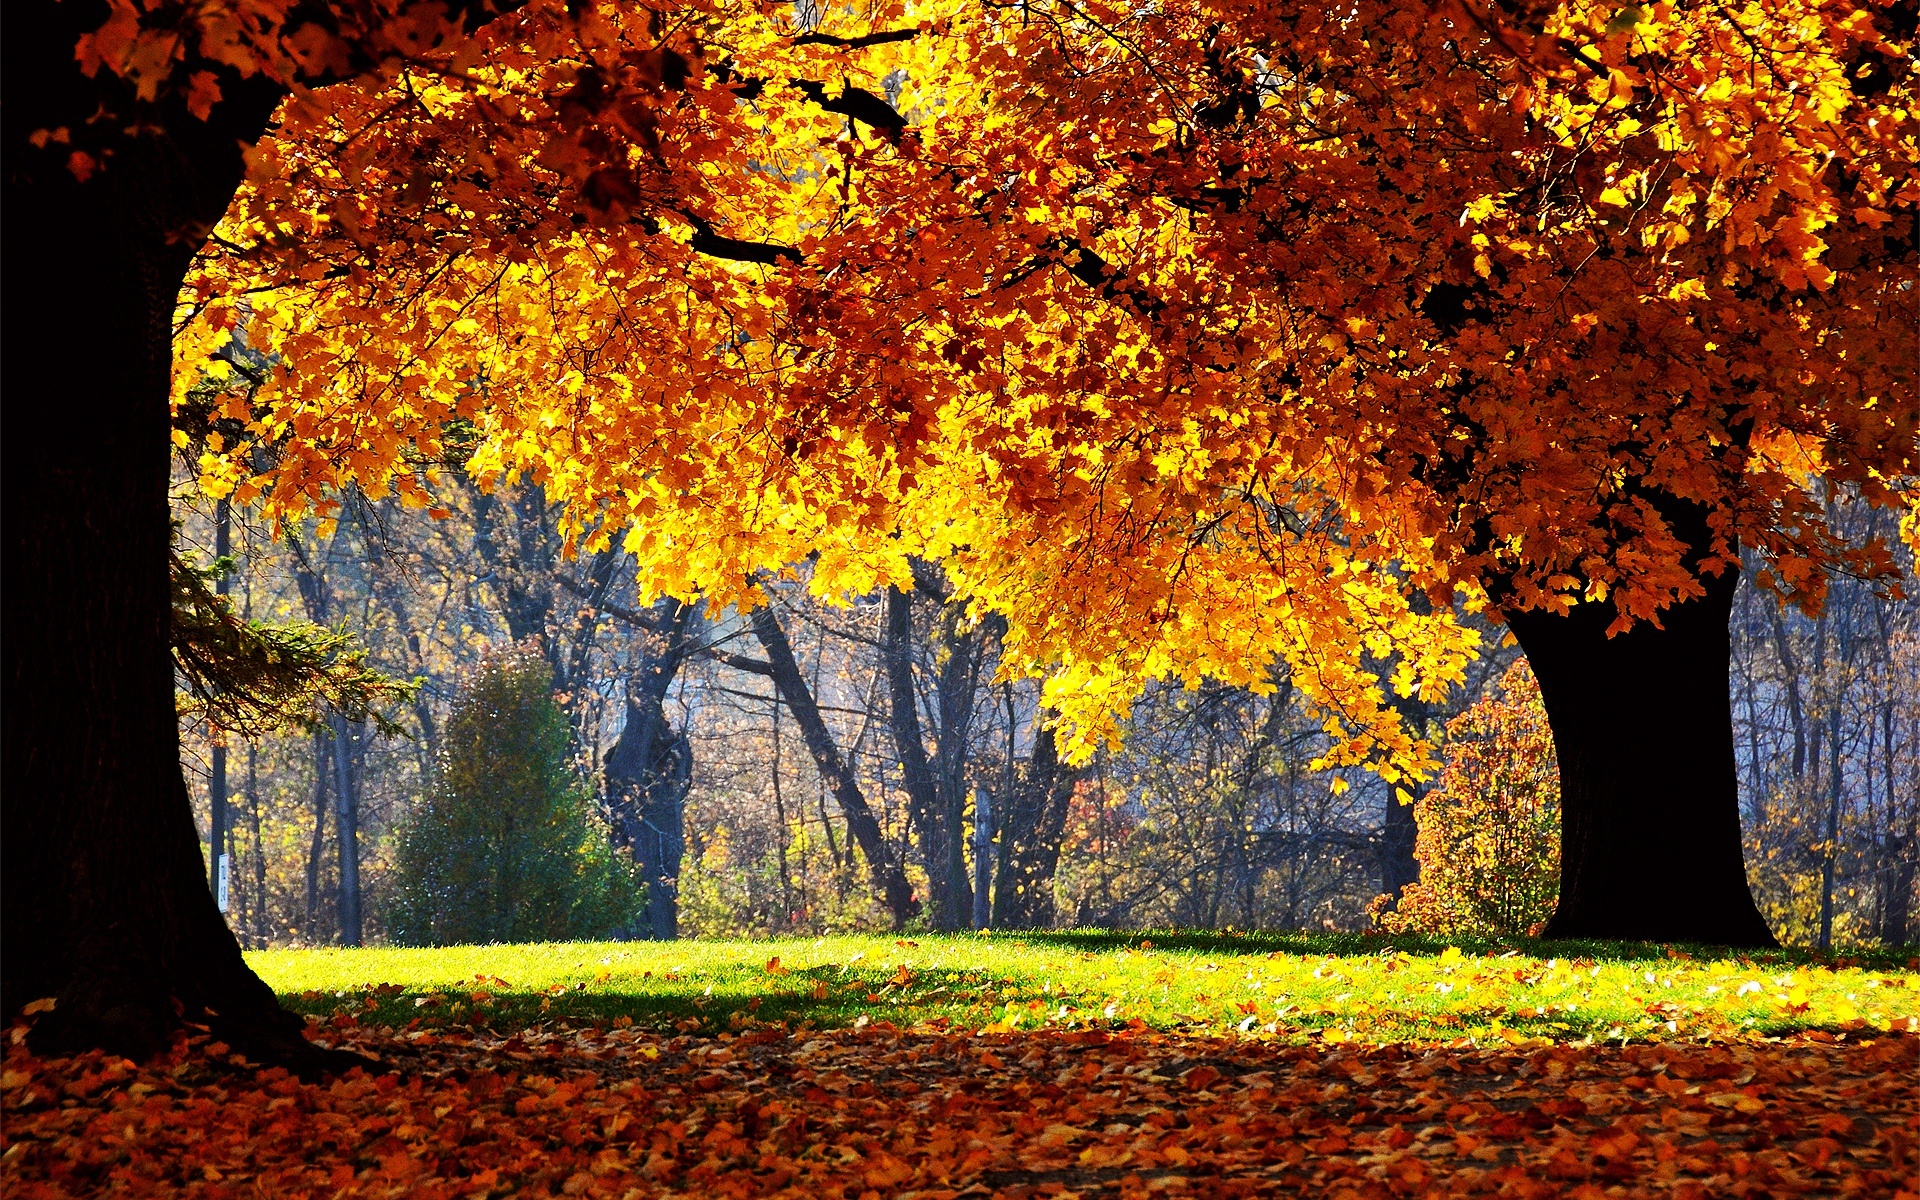 Nature in full autumn splendor